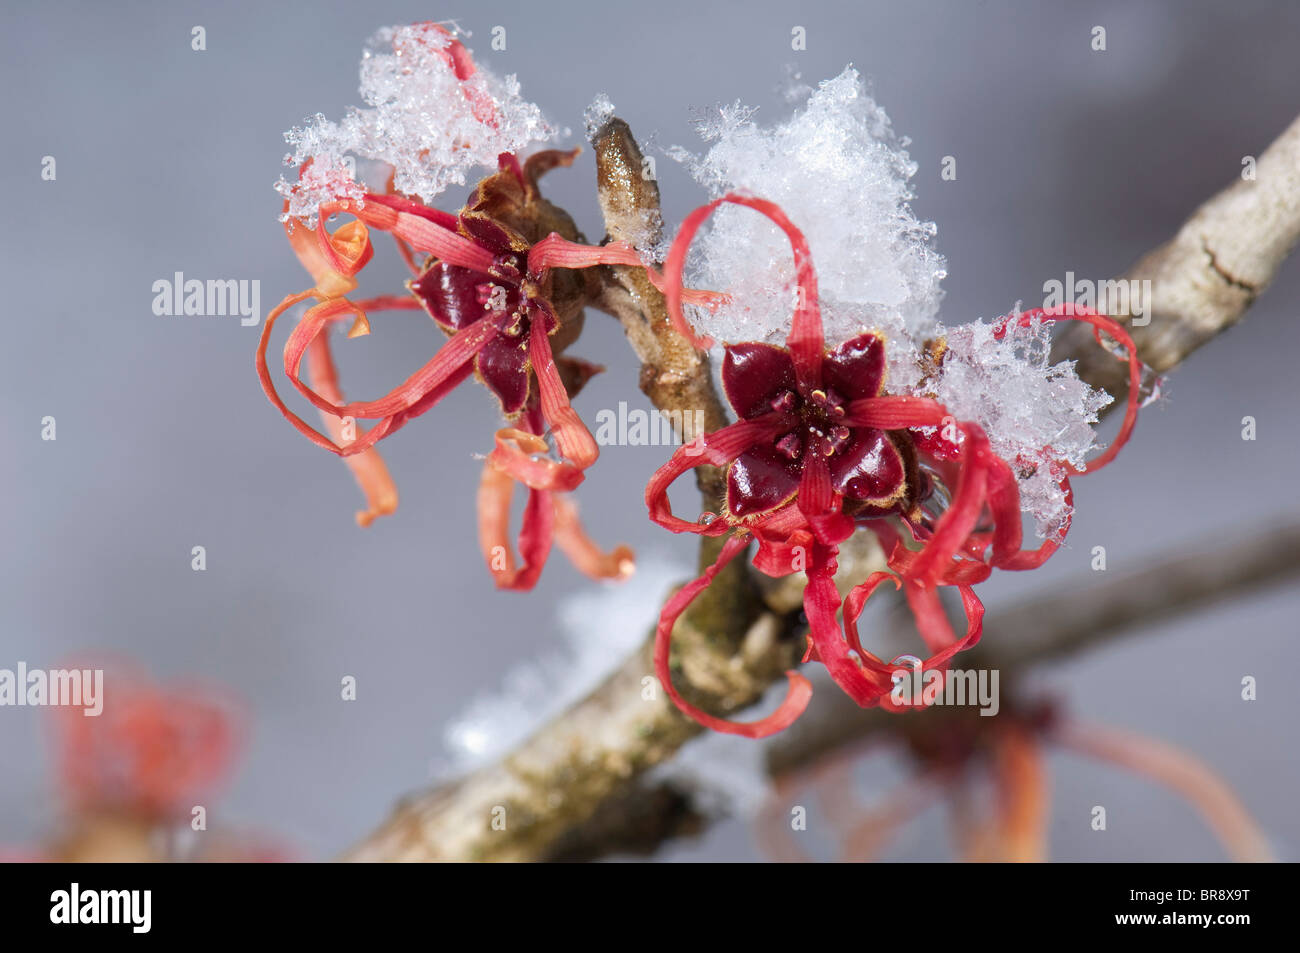 La noisette de sorcière rouge (Hamamelis x intermedia Diane), rameau en fleurs de neige. Banque D'Images